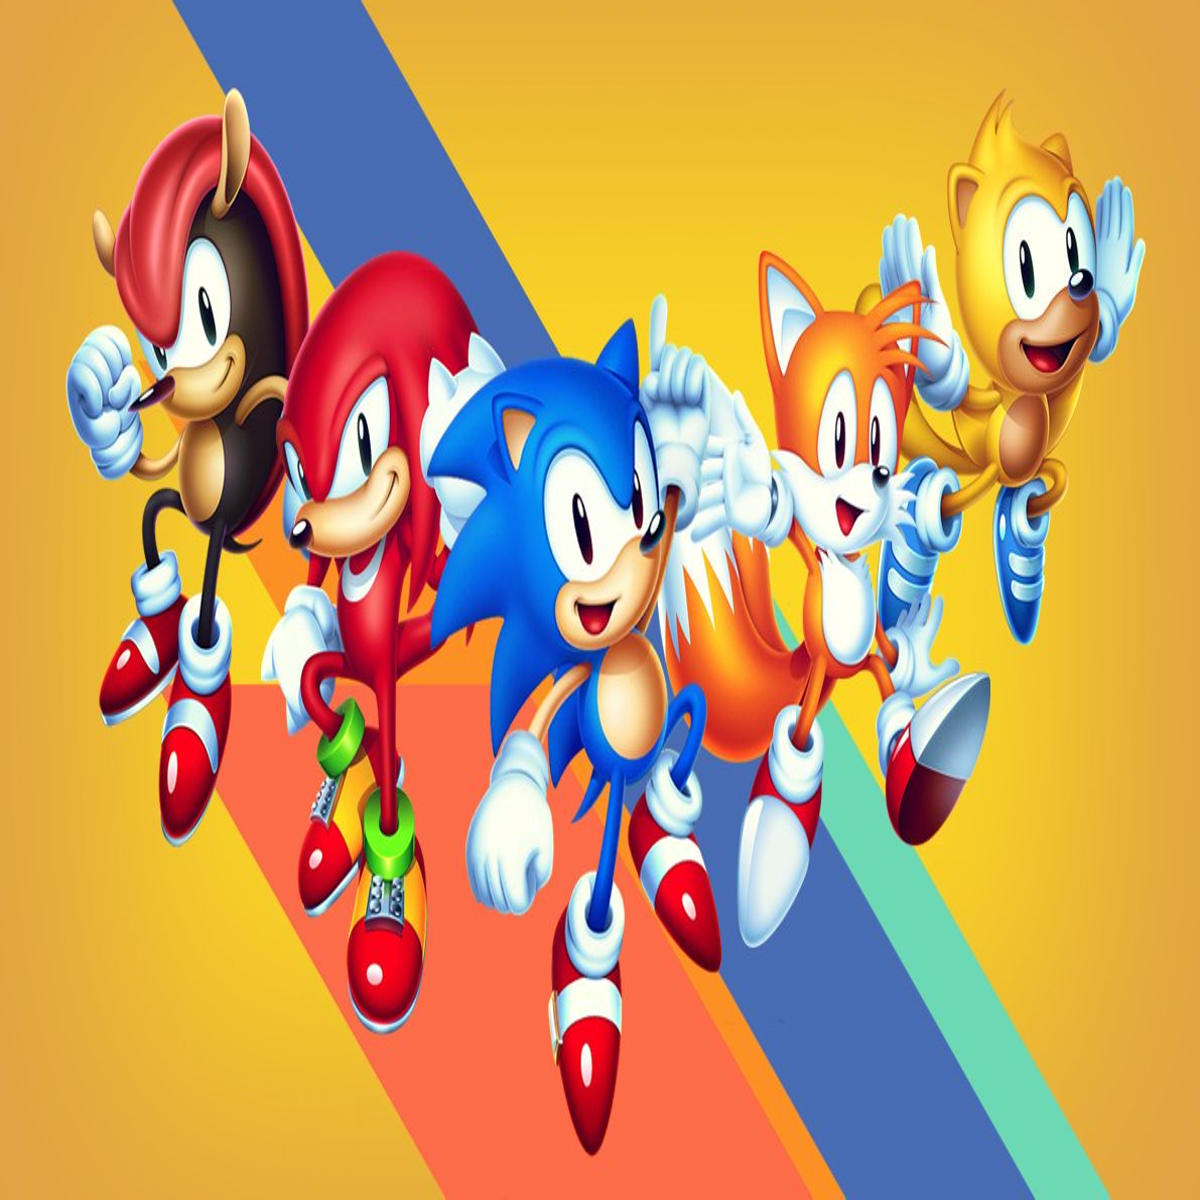 Sonic mania plus fisico nintendo switch sega